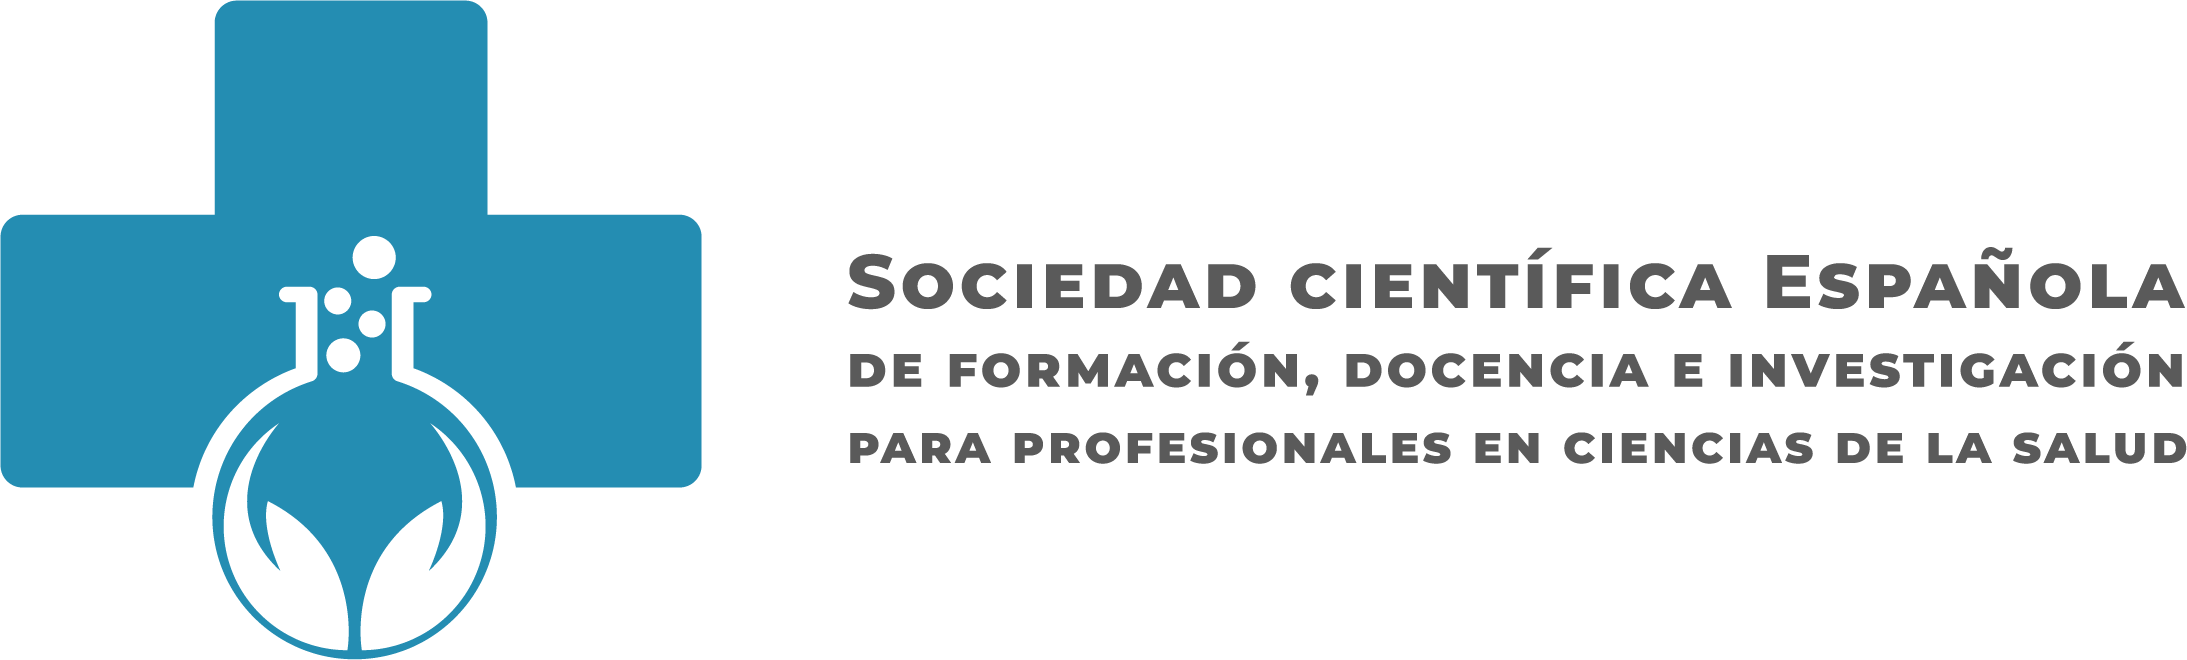 Sociedad Científica Española de formación, docencia e investigación para profesionales en ciencias de la salud